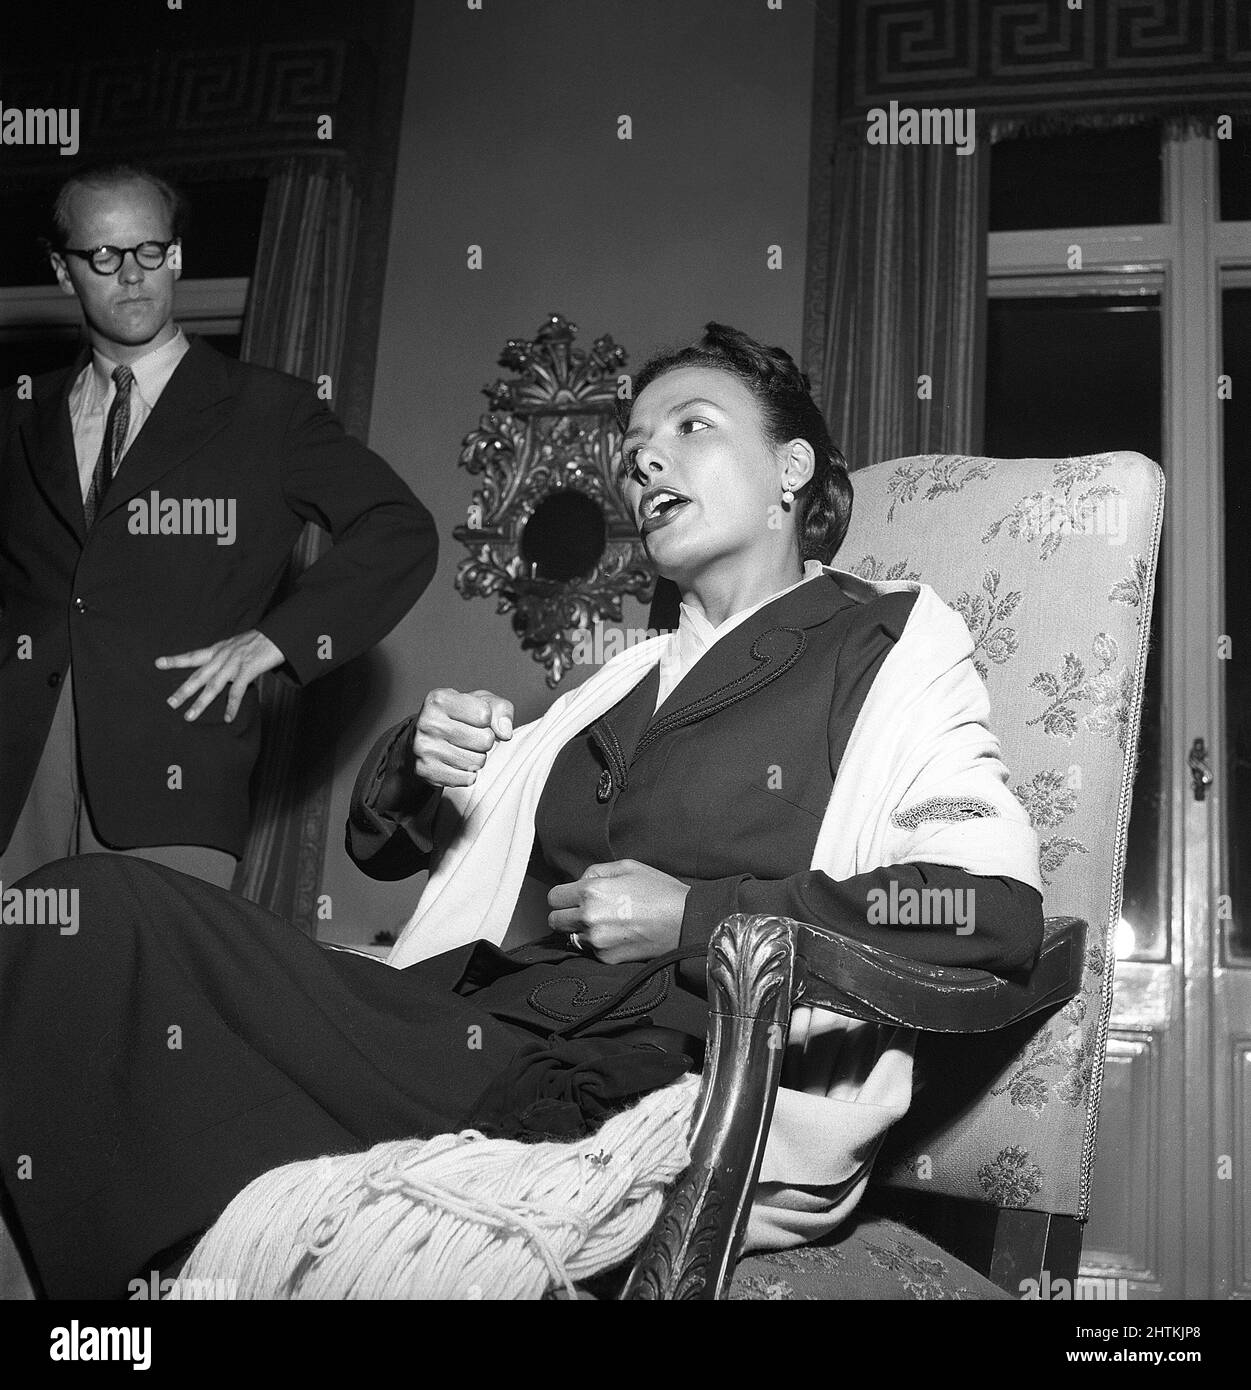 Lena Horne. Amerikanische Sängerin und Schauspielerin, 1917-2010. Bild bei einem Besuch in Schweden 1952. Kristoffersson Ref. BG92-8 Stockfoto